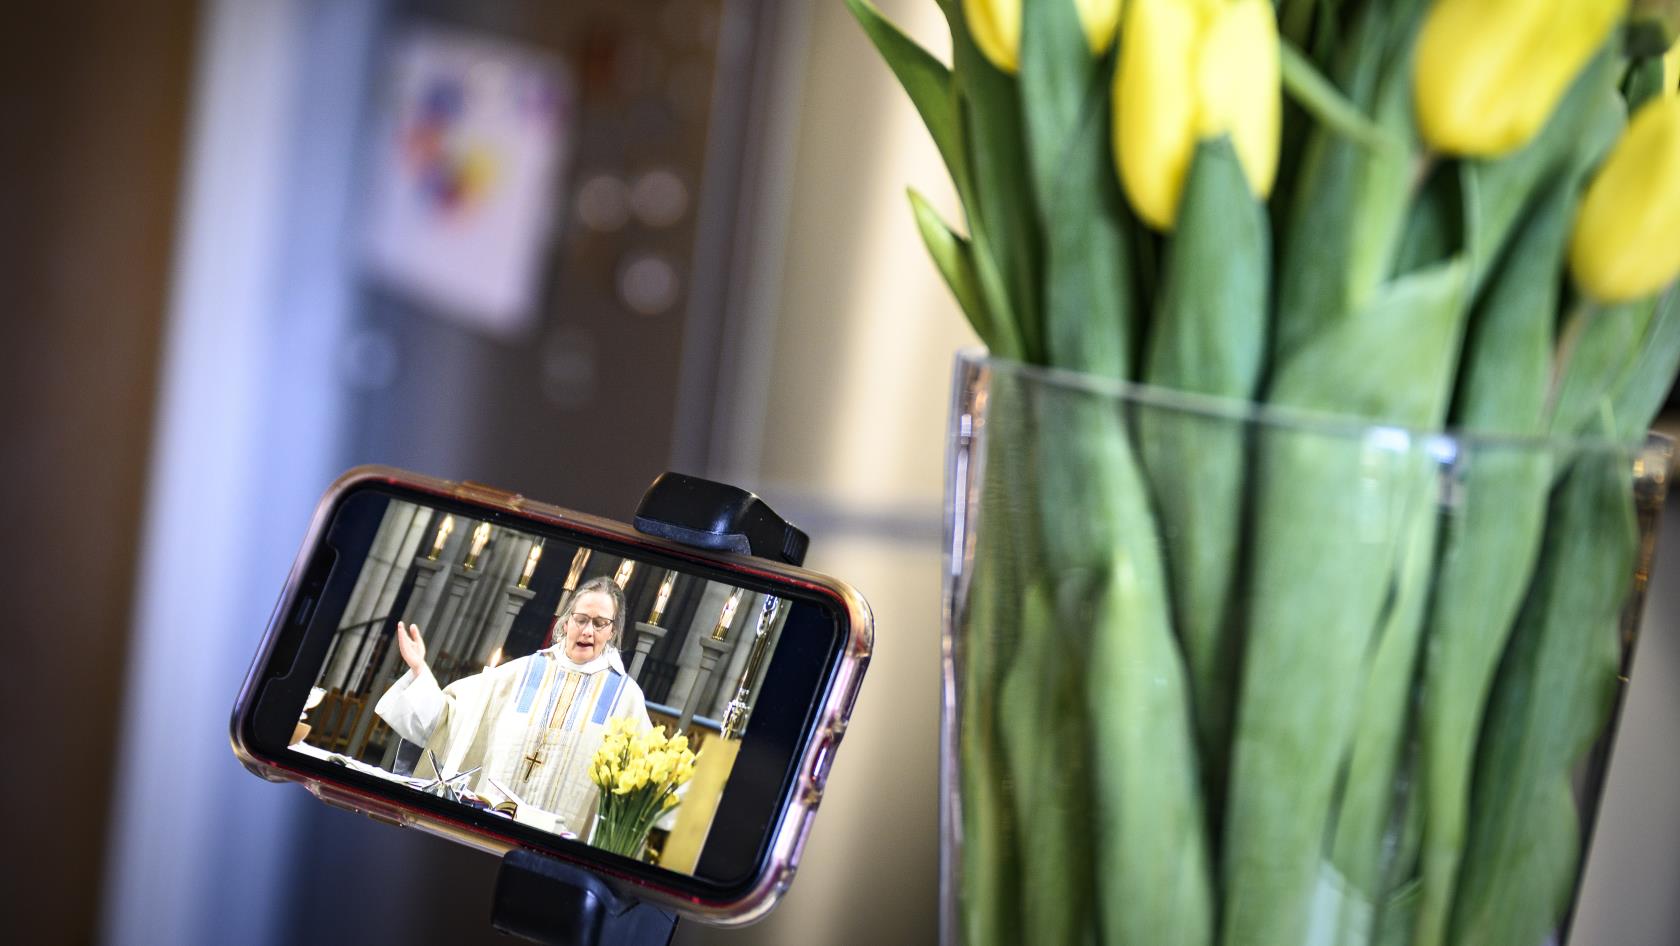 En mobiltelefon står uppställd bredvid en vas tulpaner. Skärmen visar en biskop som håller gudstjänst.